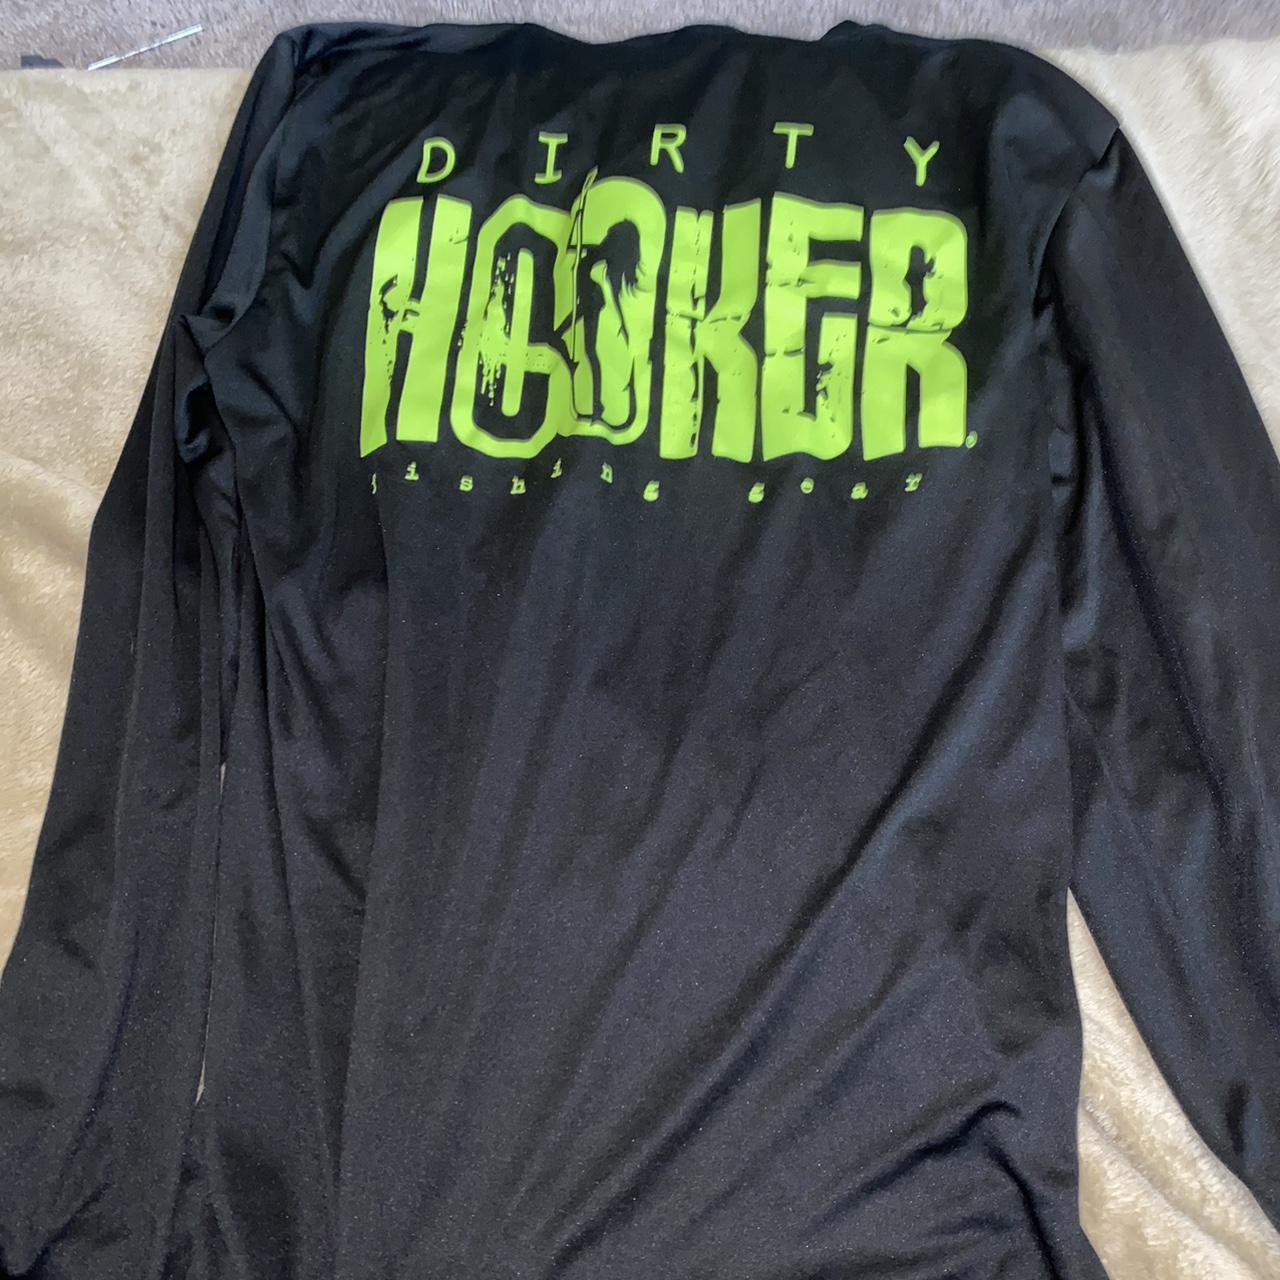 Dirty Hooker Fishing Shirt - Depop